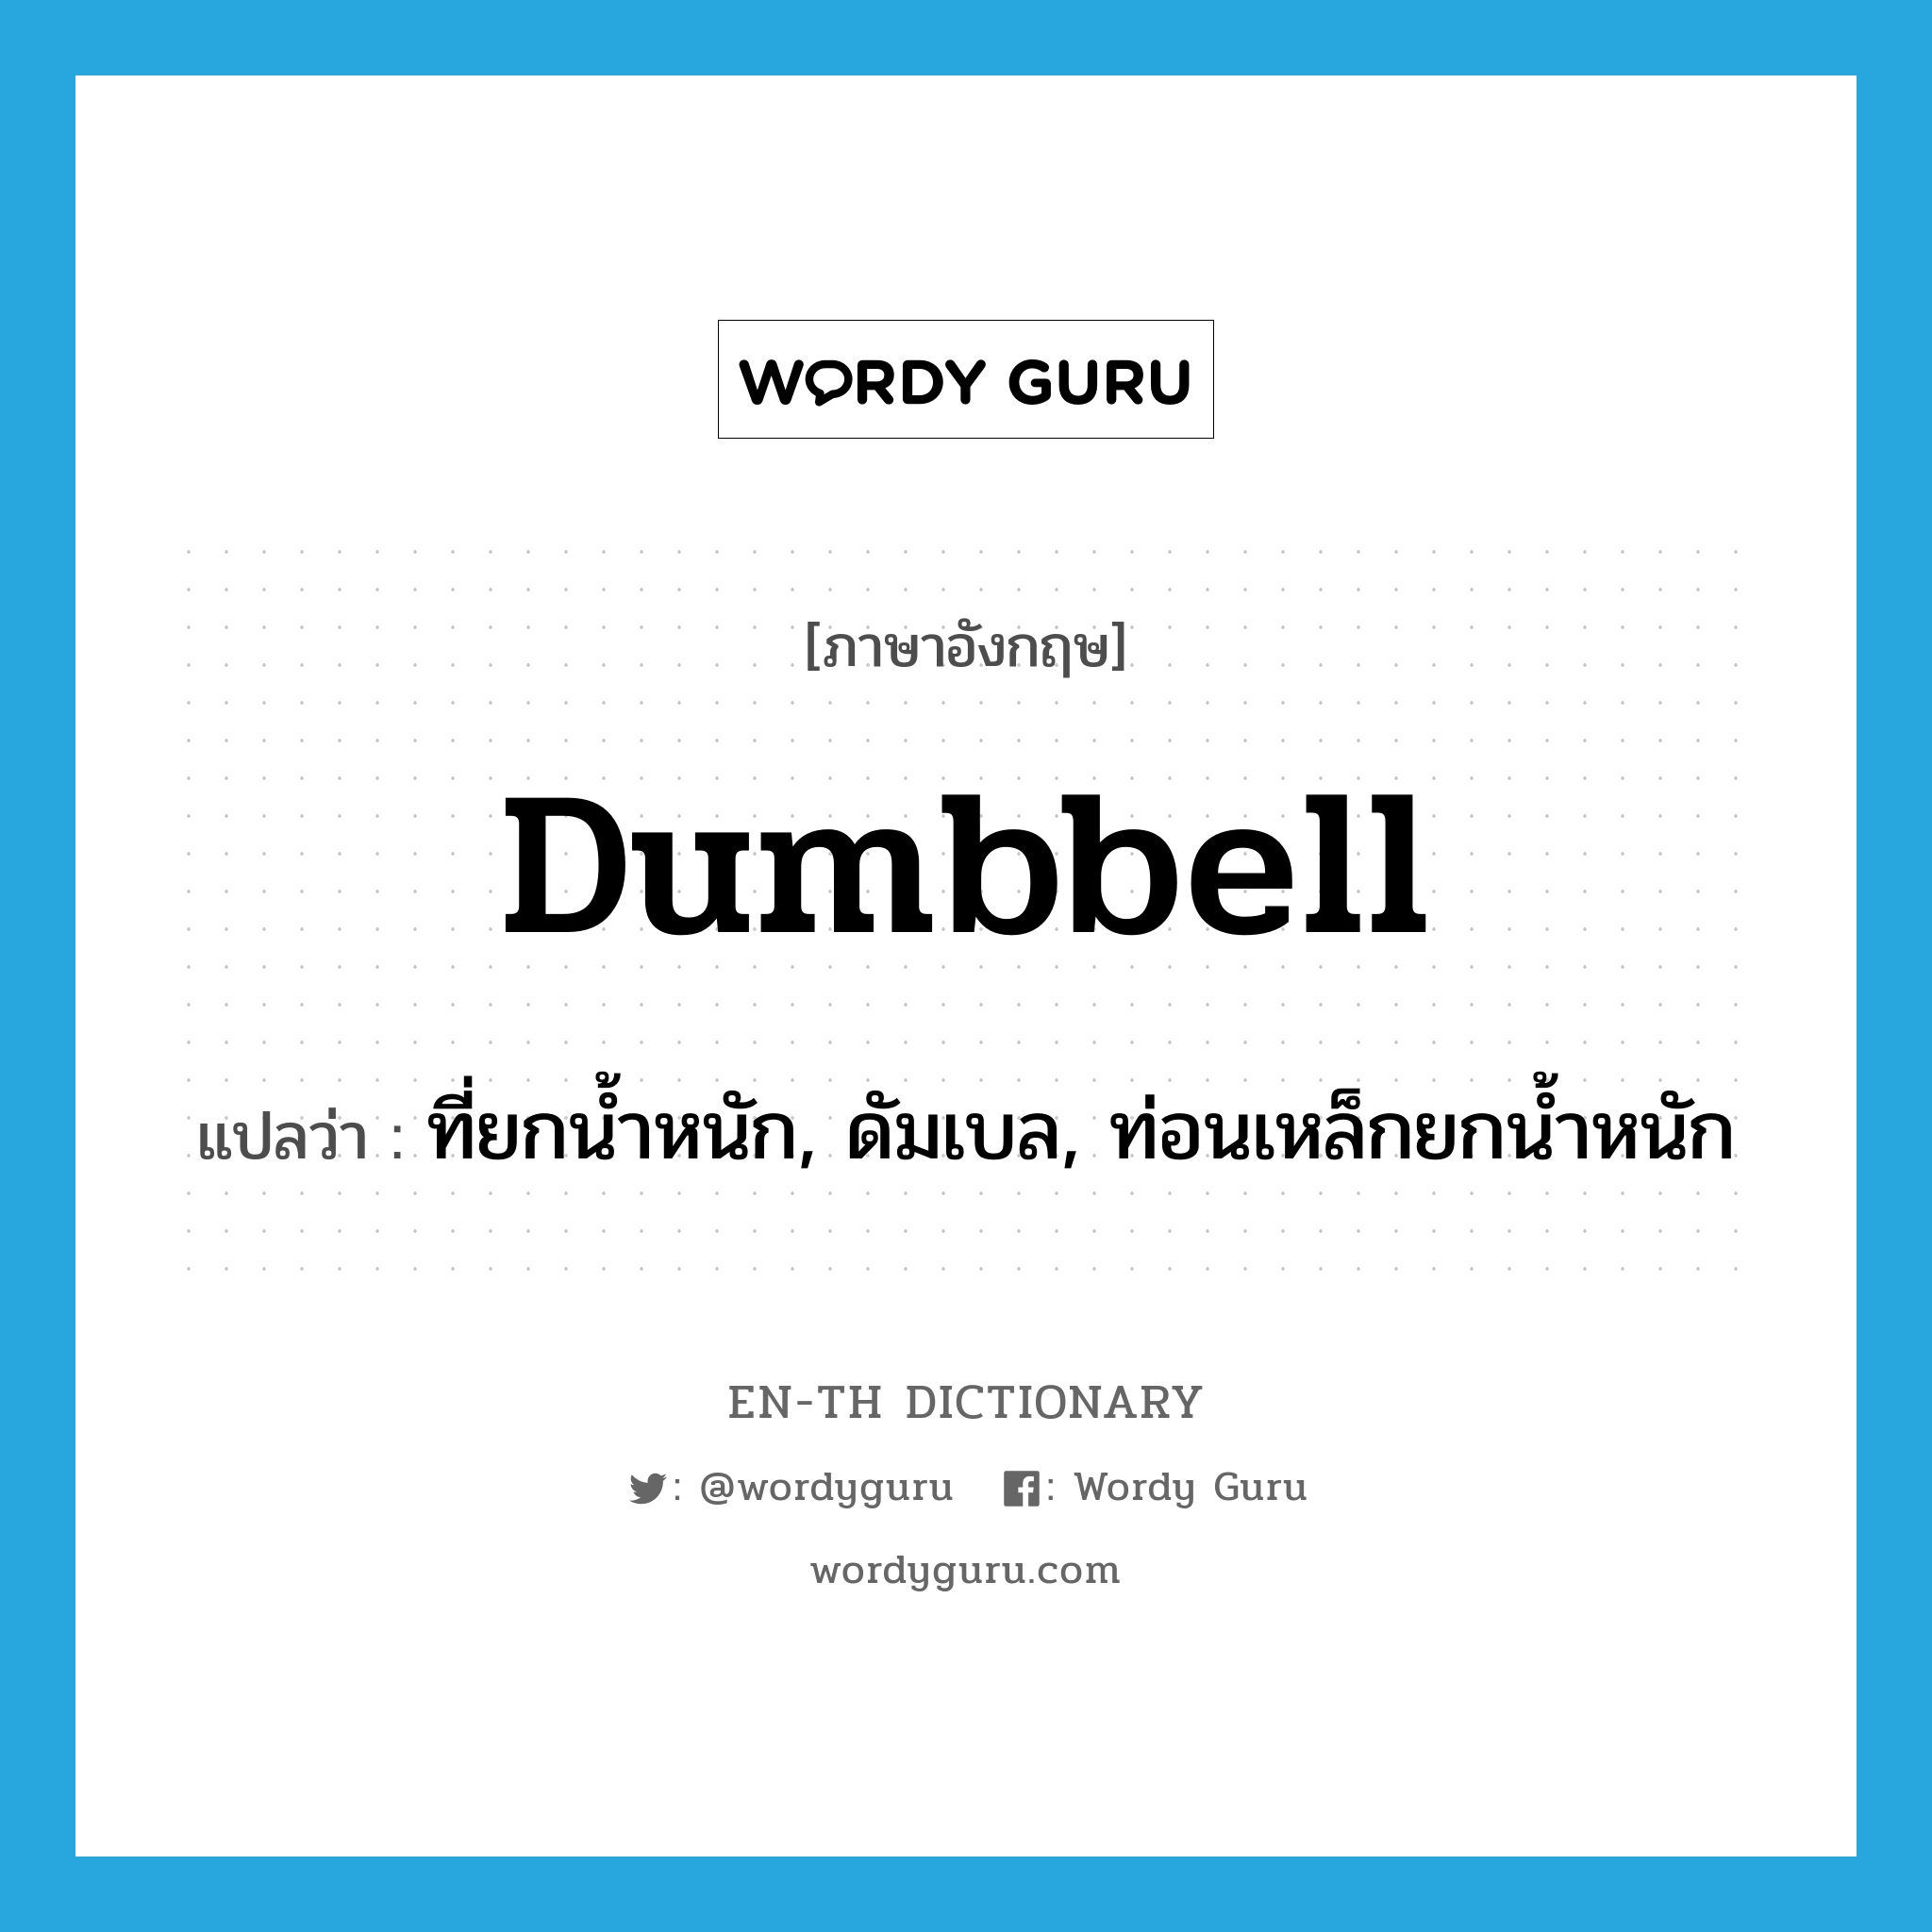 dumbbell แปลว่า?, คำศัพท์ภาษาอังกฤษ dumbbell แปลว่า ที่ยกน้ำหนัก, ดัมเบล, ท่อนเหล็กยกน้ำหนัก ประเภท N หมวด N